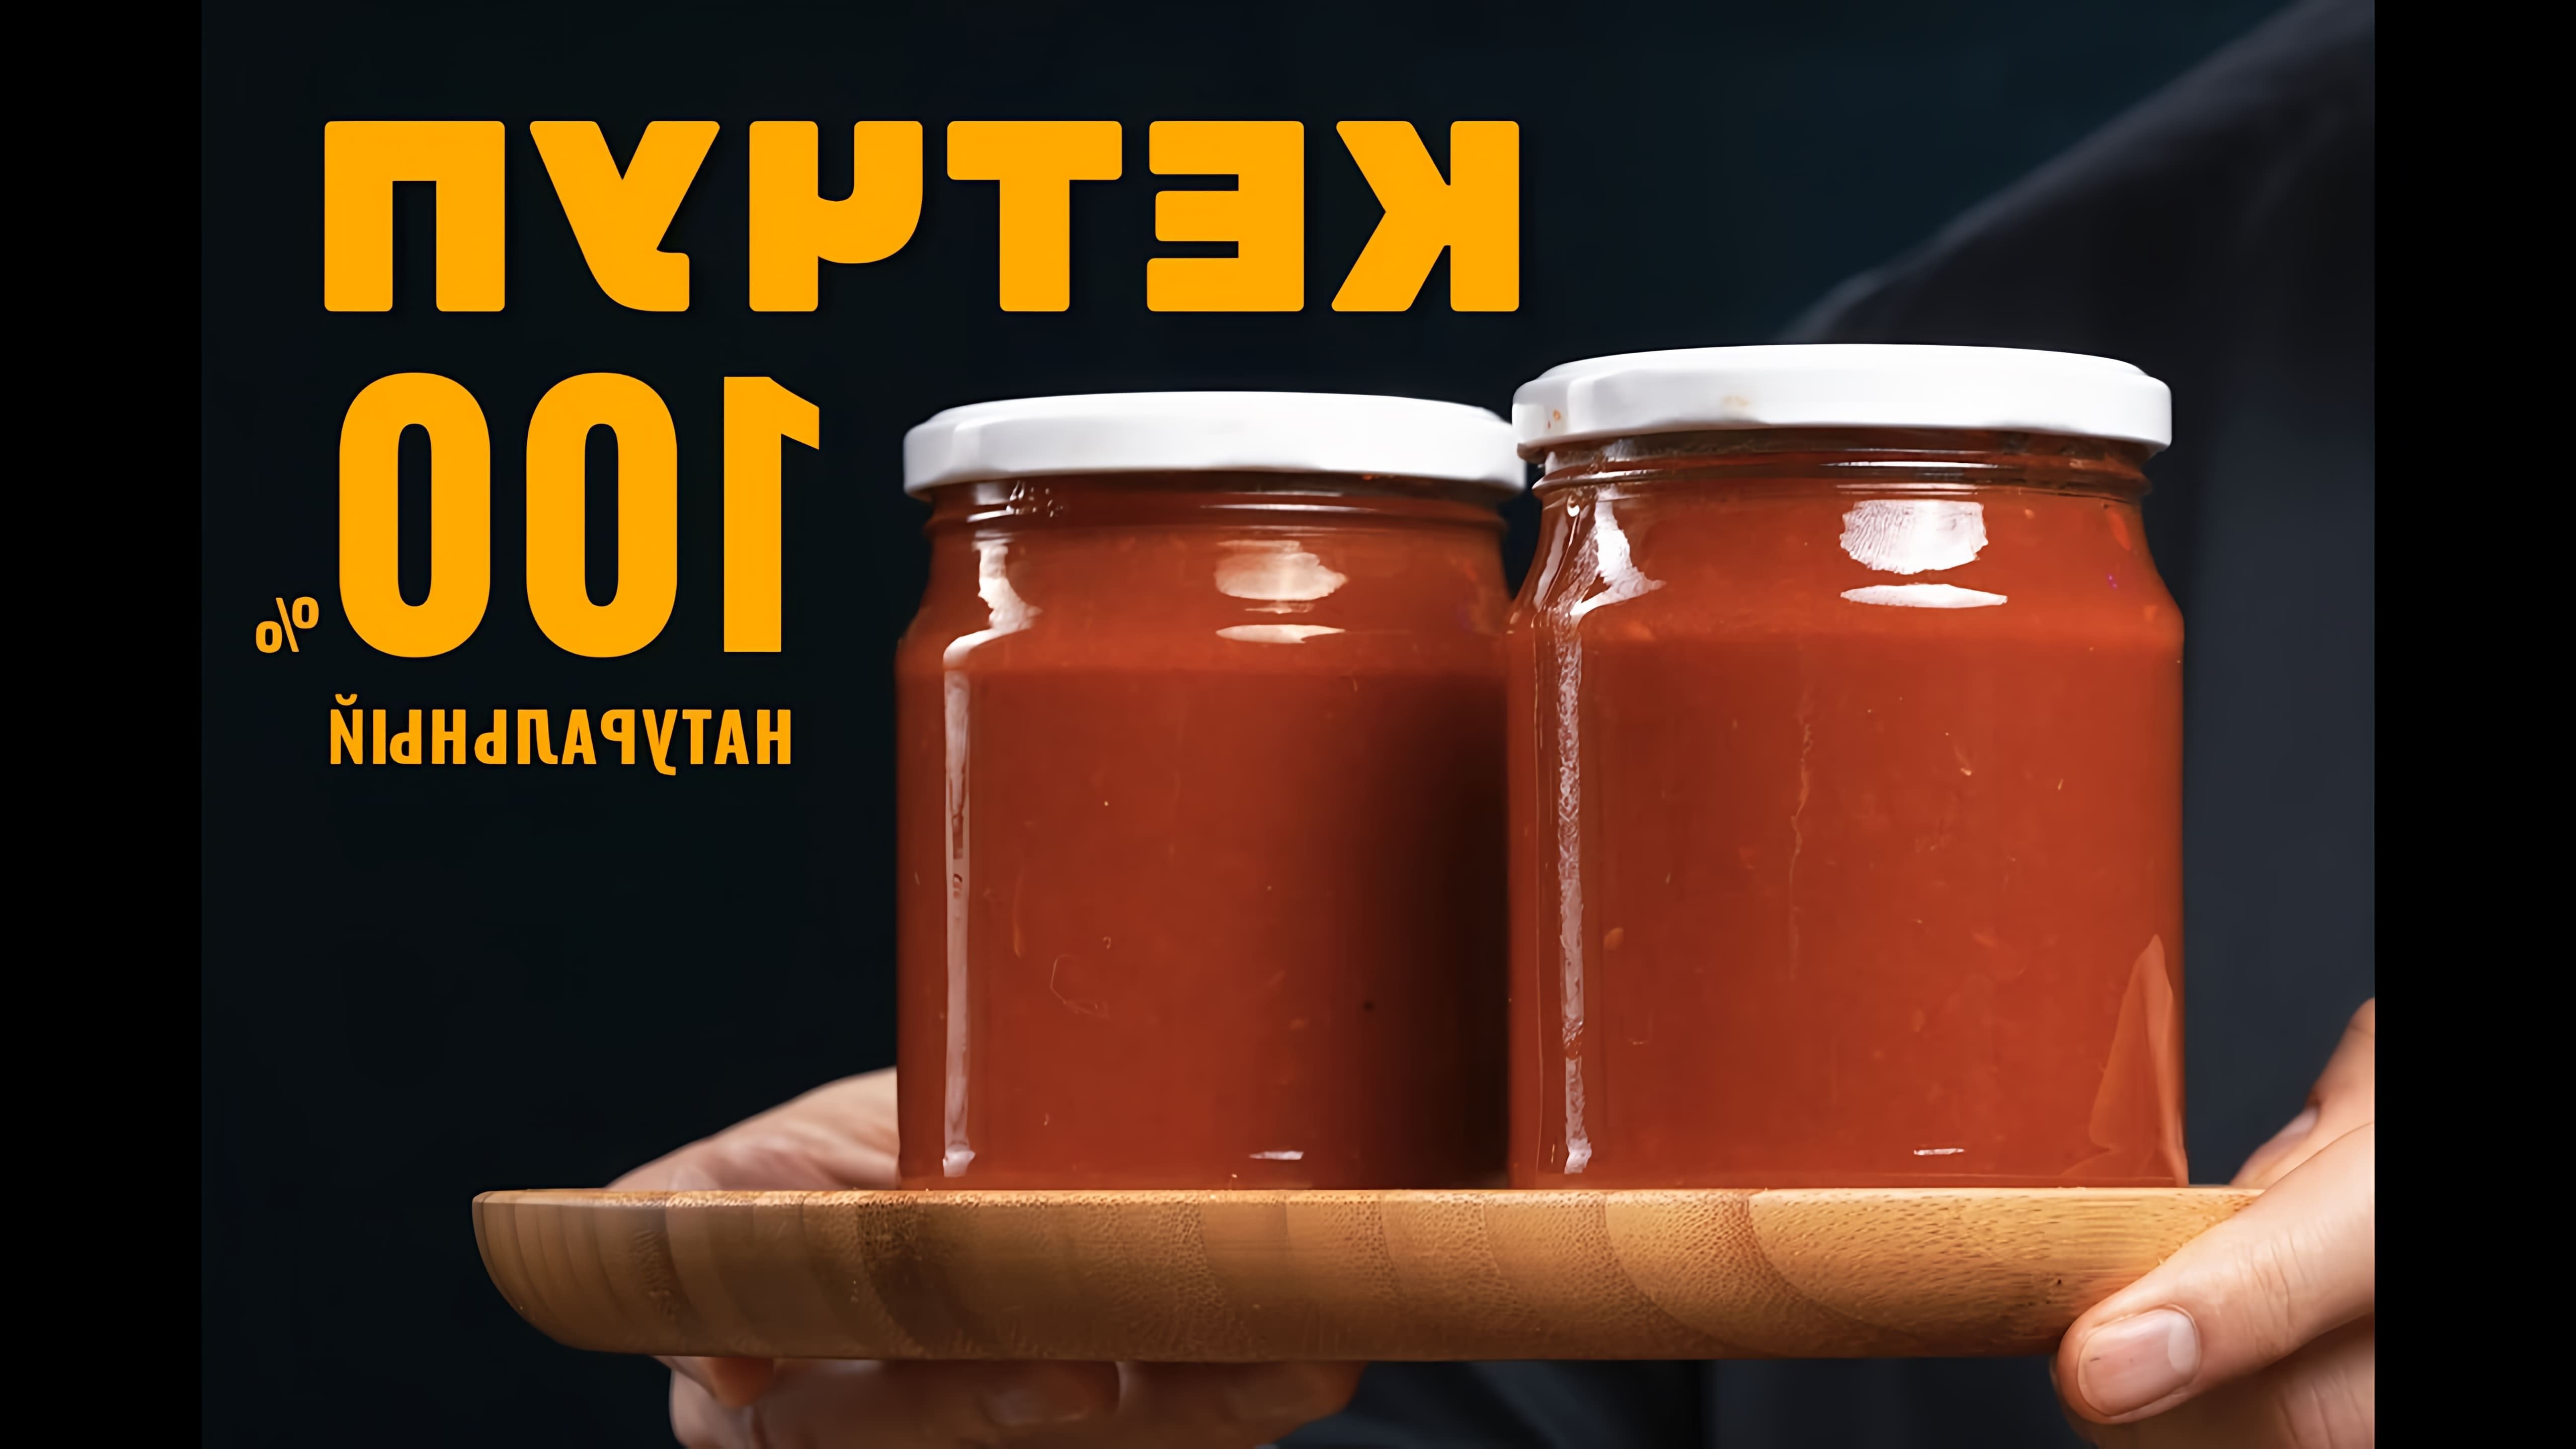 В этом видео демонстрируется рецепт домашнего кетчупа, который отличается идеальным вкусом и долгим сроком хранения